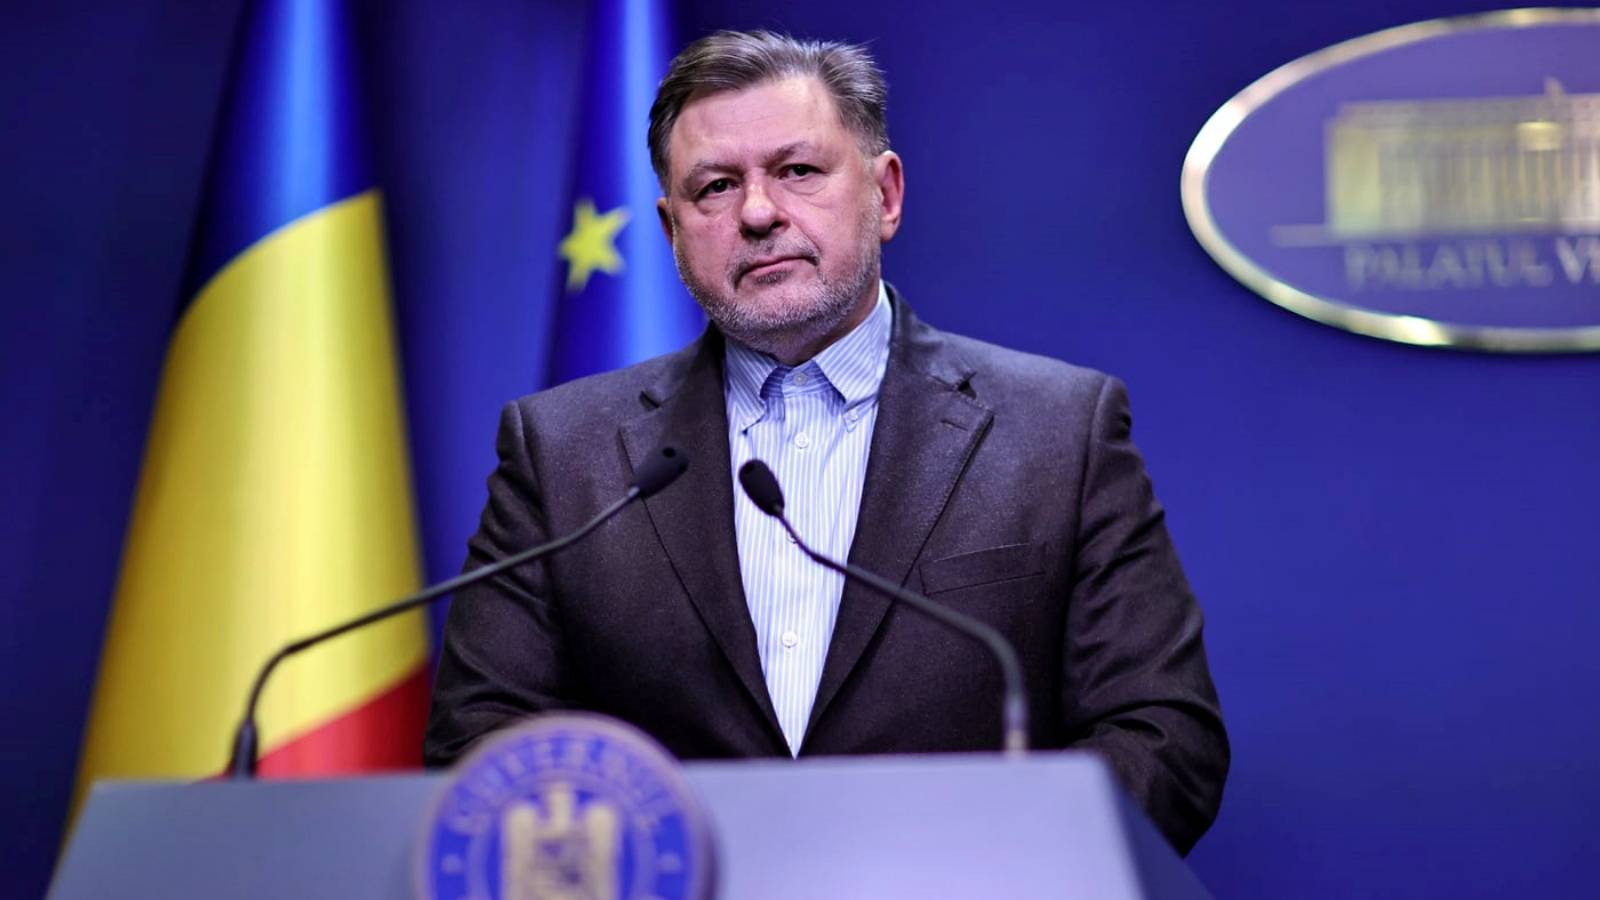 Ministro de Salud AVISO DE ÚLTIMA HORA transmitido al país Rumanía